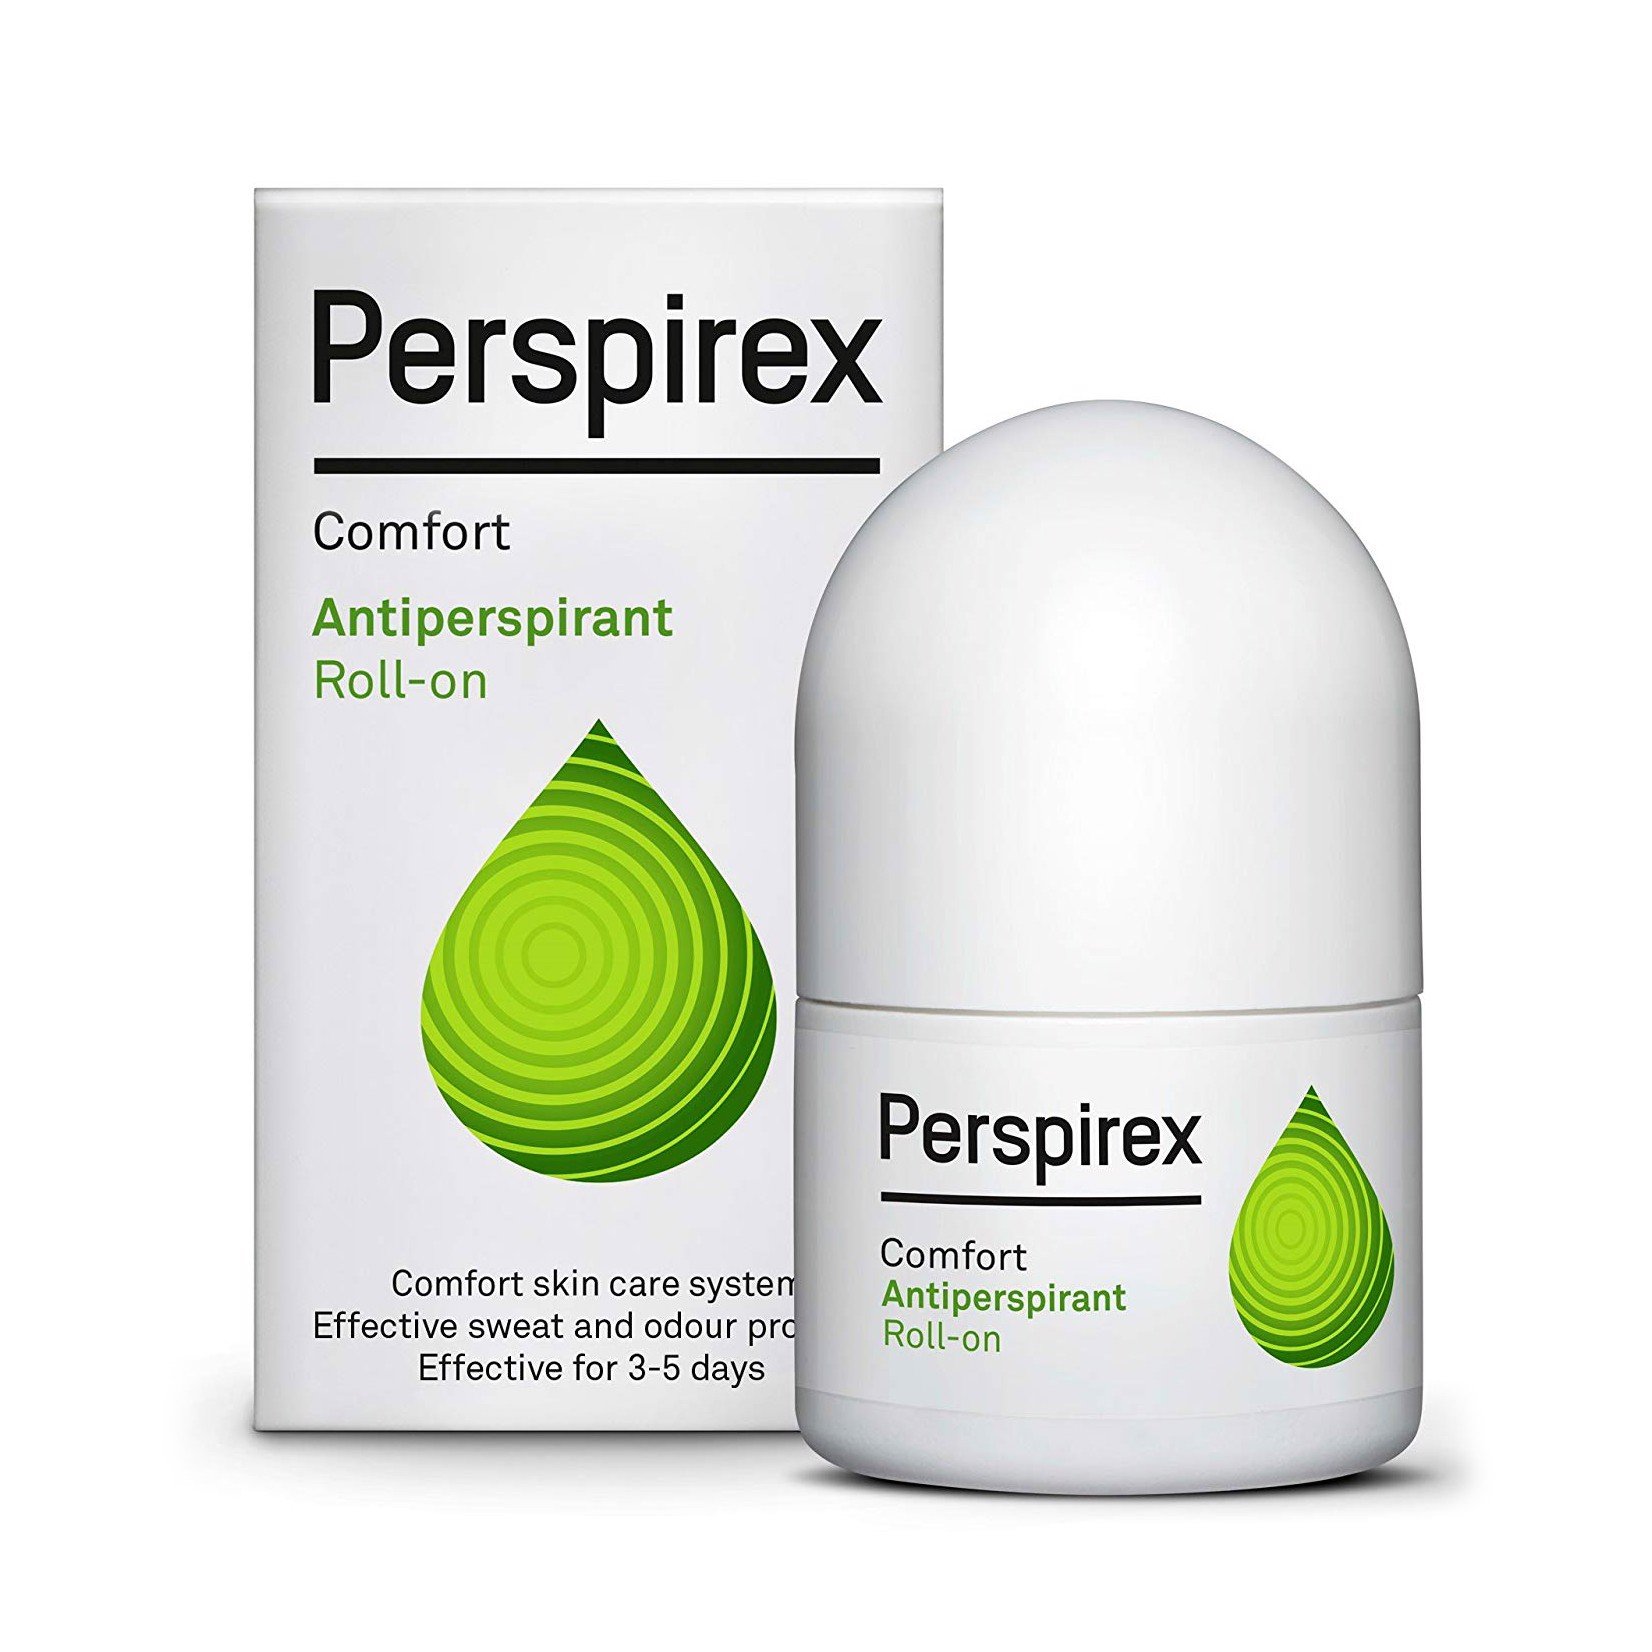 Lăn khử mùi Perspirex Comfort